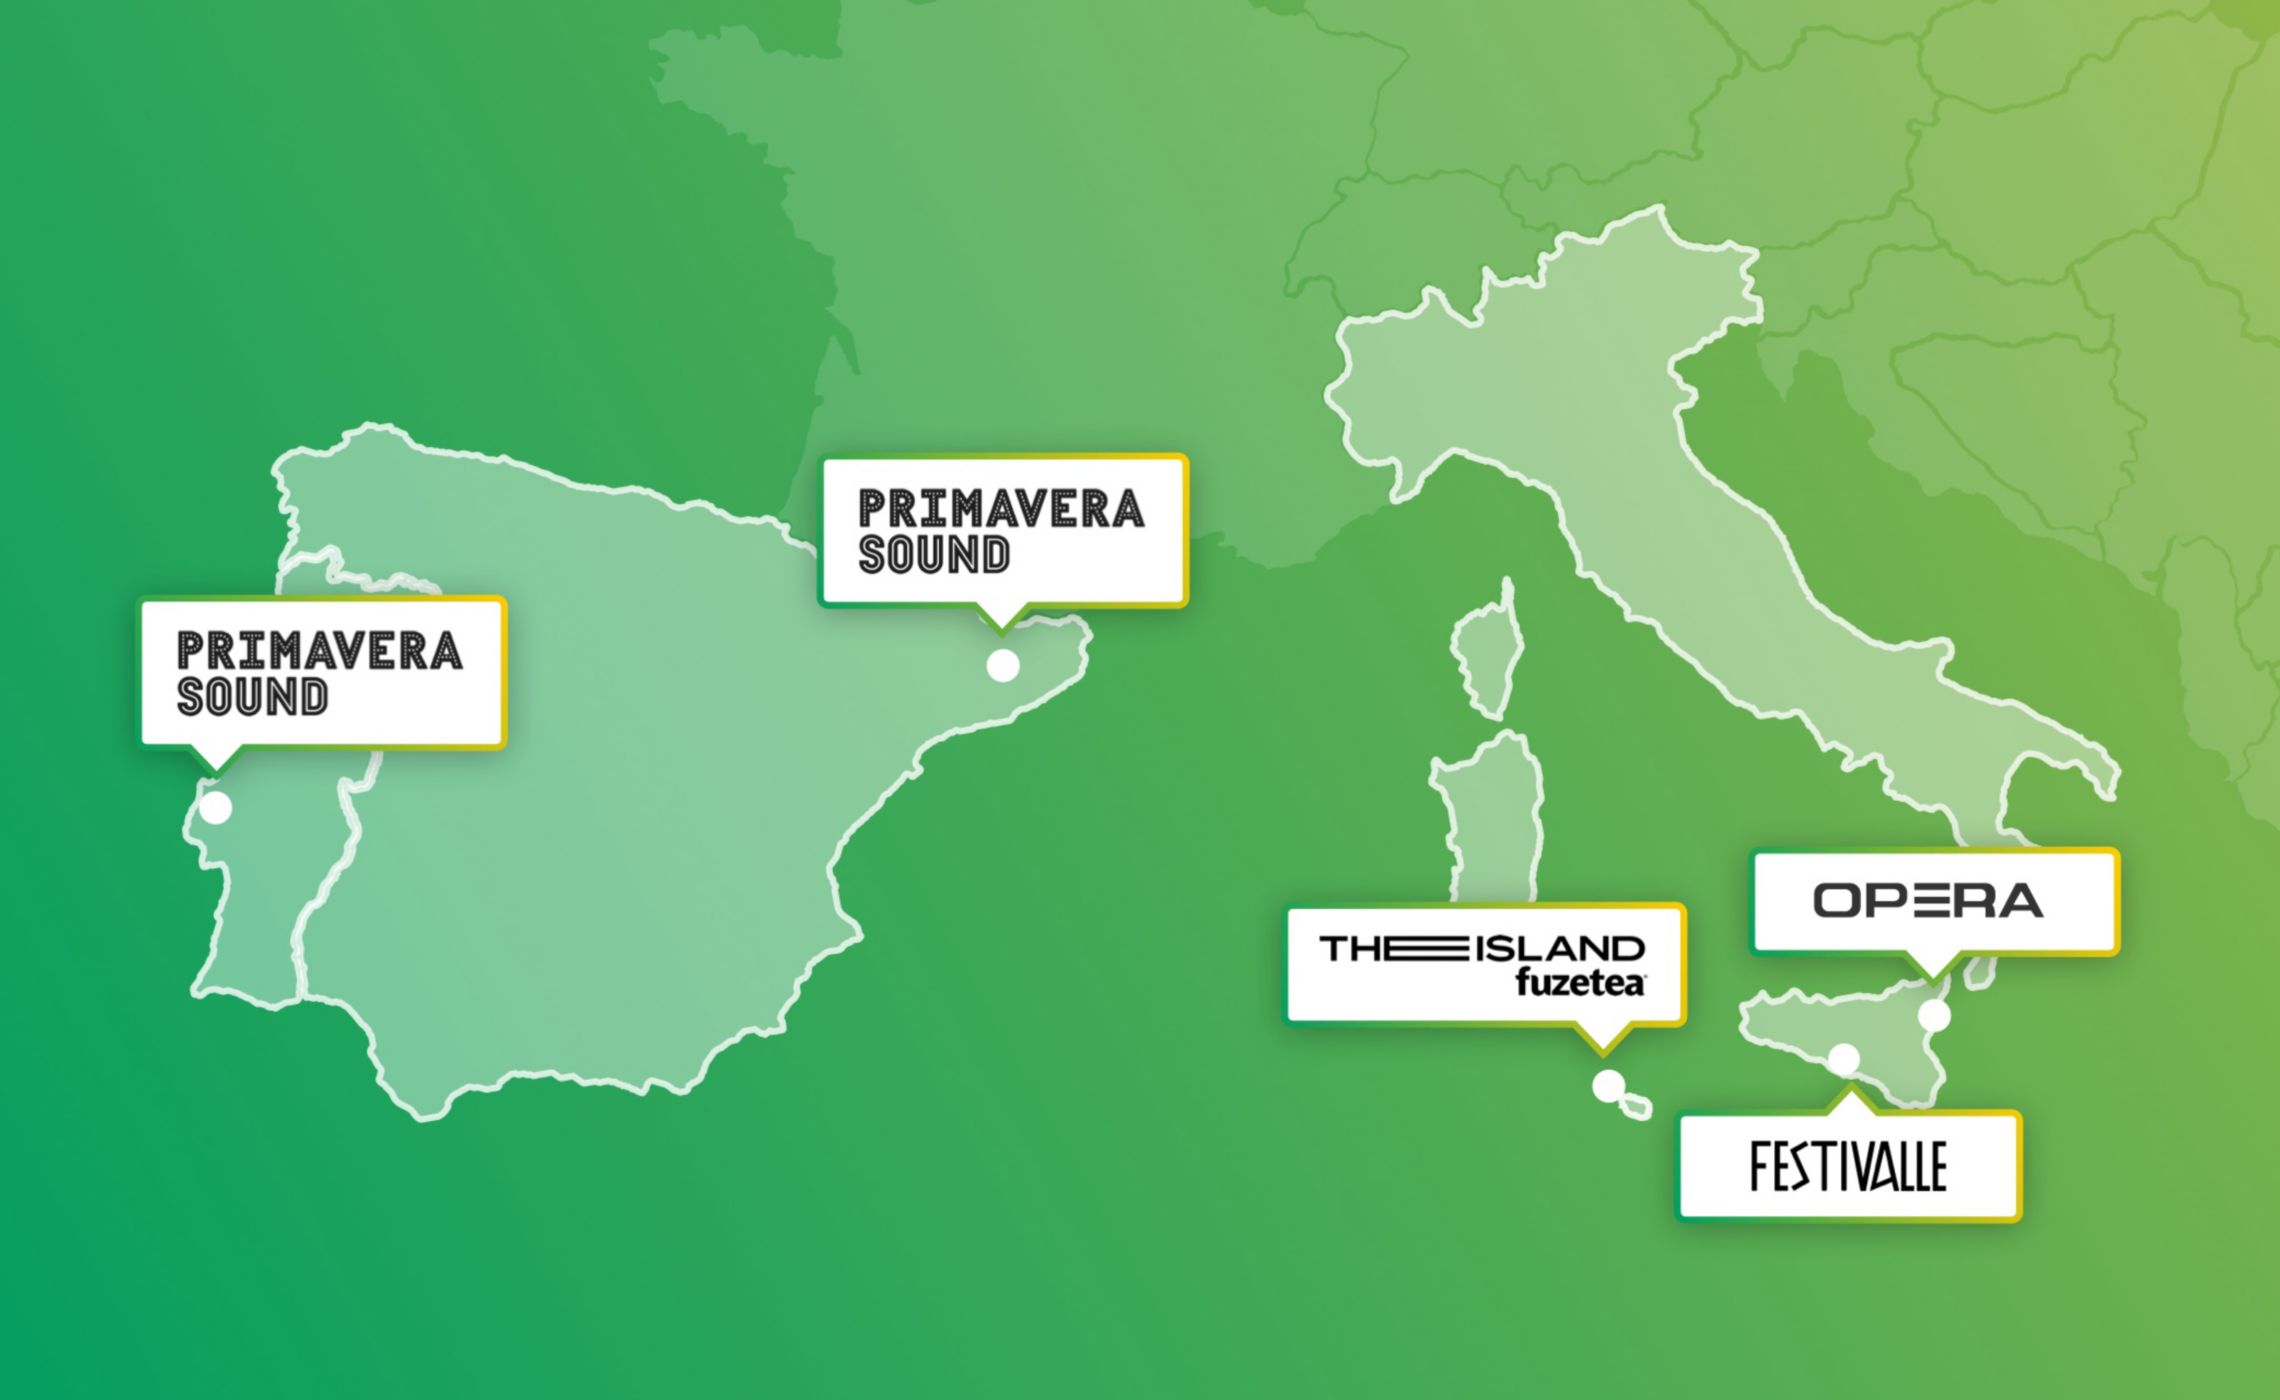 Mappa di Italia, Spagna e Portogallo che mostra i luoghi dei festival